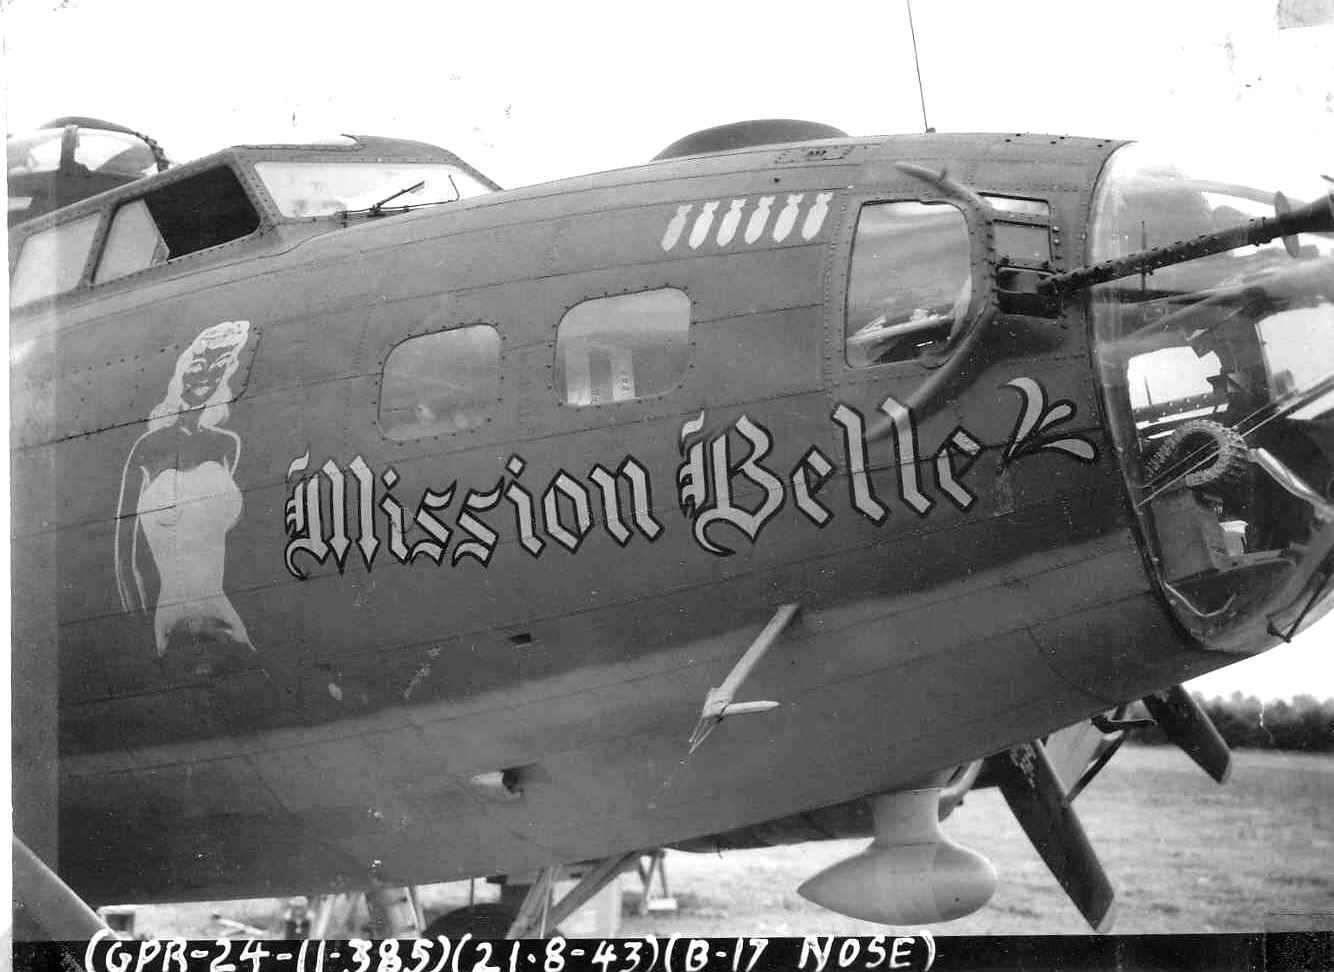 B-17 #42-30197 / Mission Belle